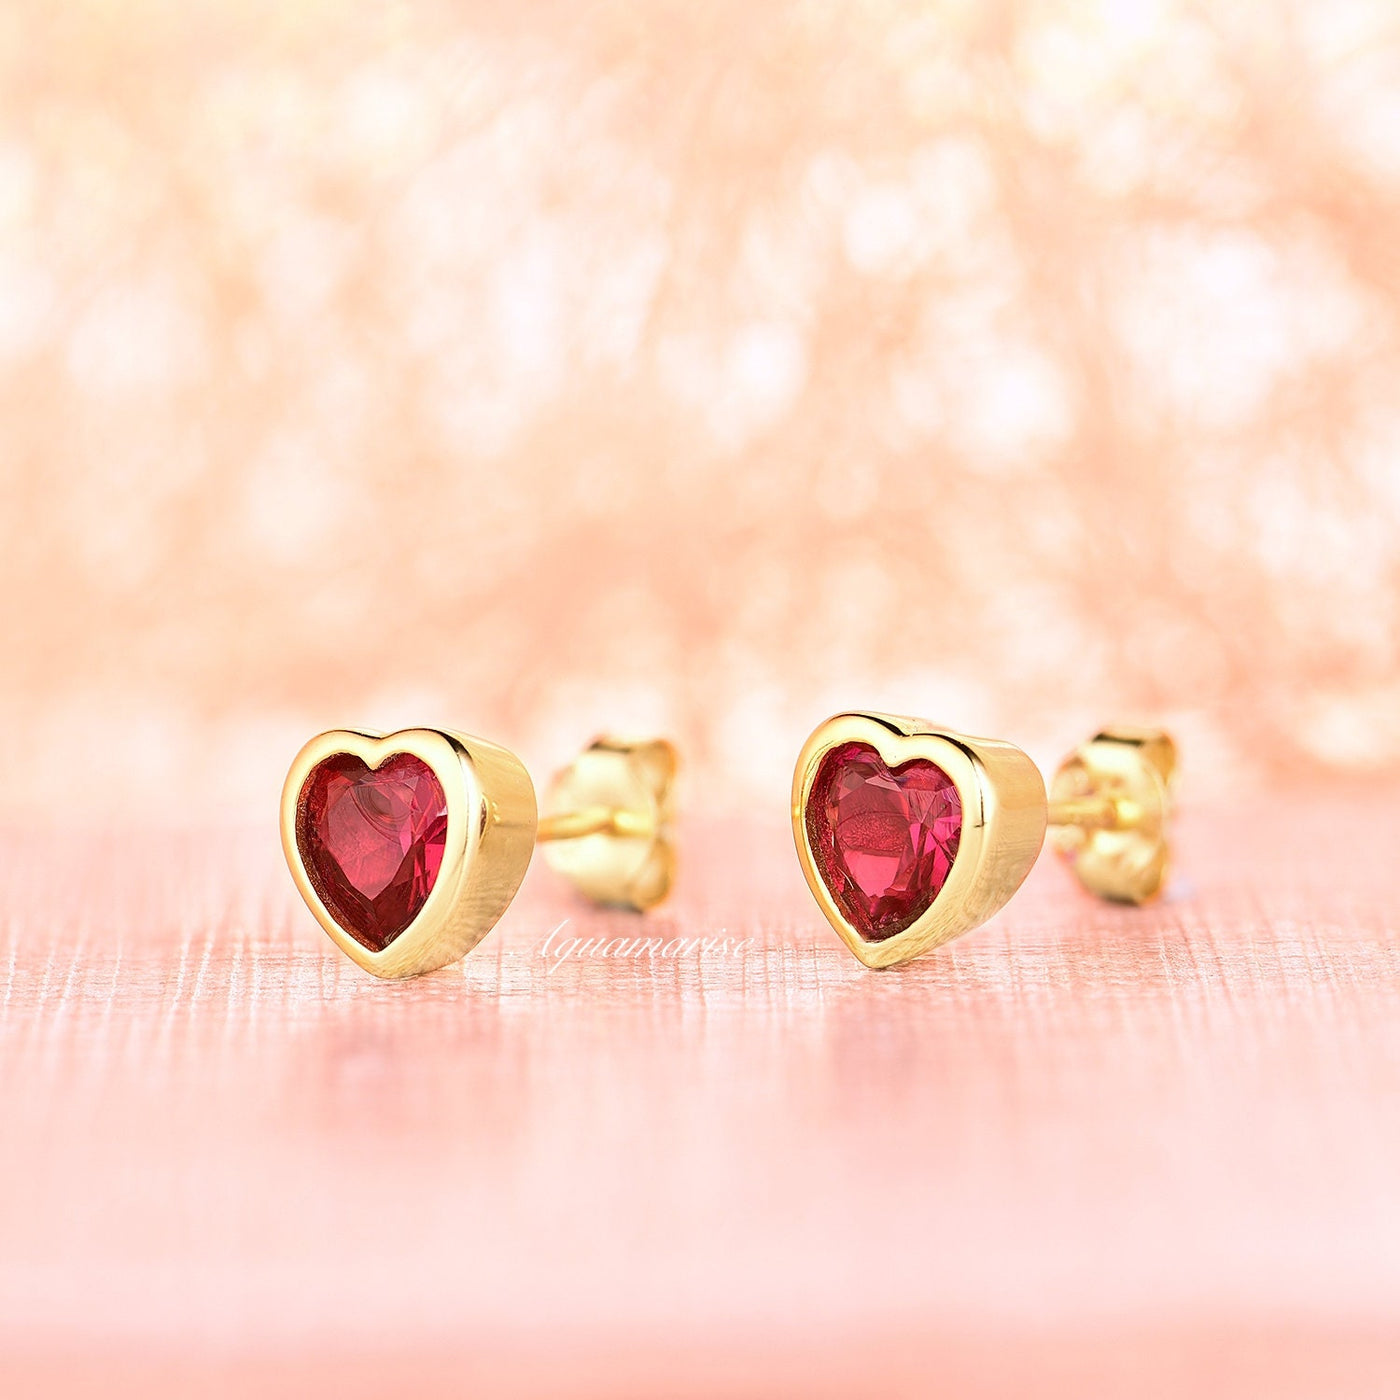 Heart Ruby Earrings- 14K Yellow Gold Vermeil